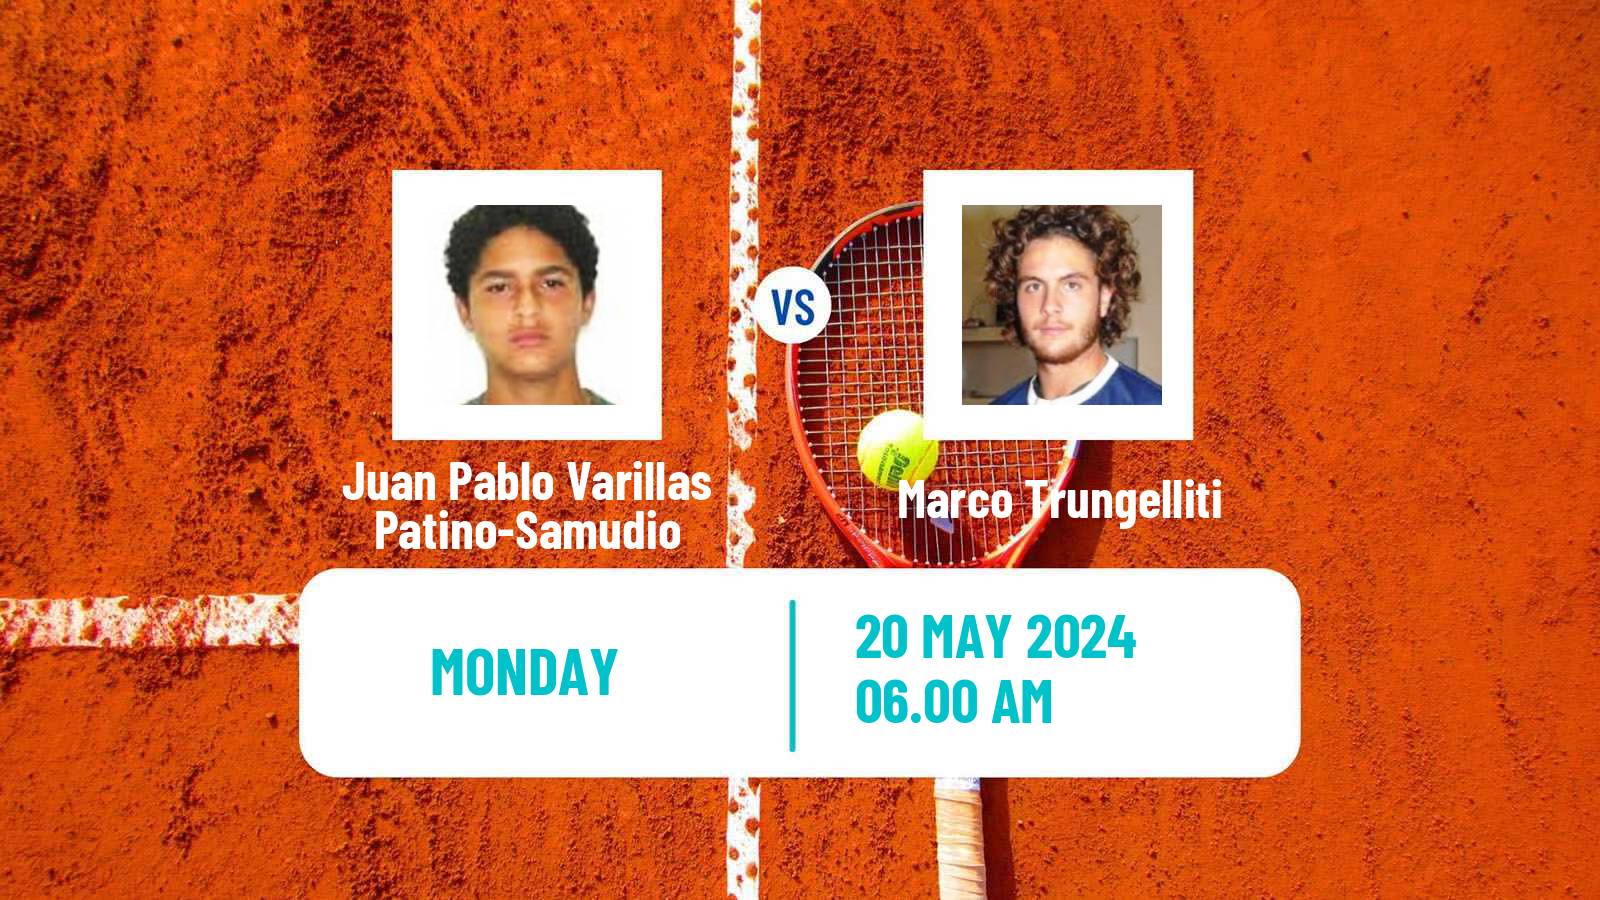 Tennis ATP Roland Garros Juan Pablo Varillas Patino-Samudio - Marco Trungelliti